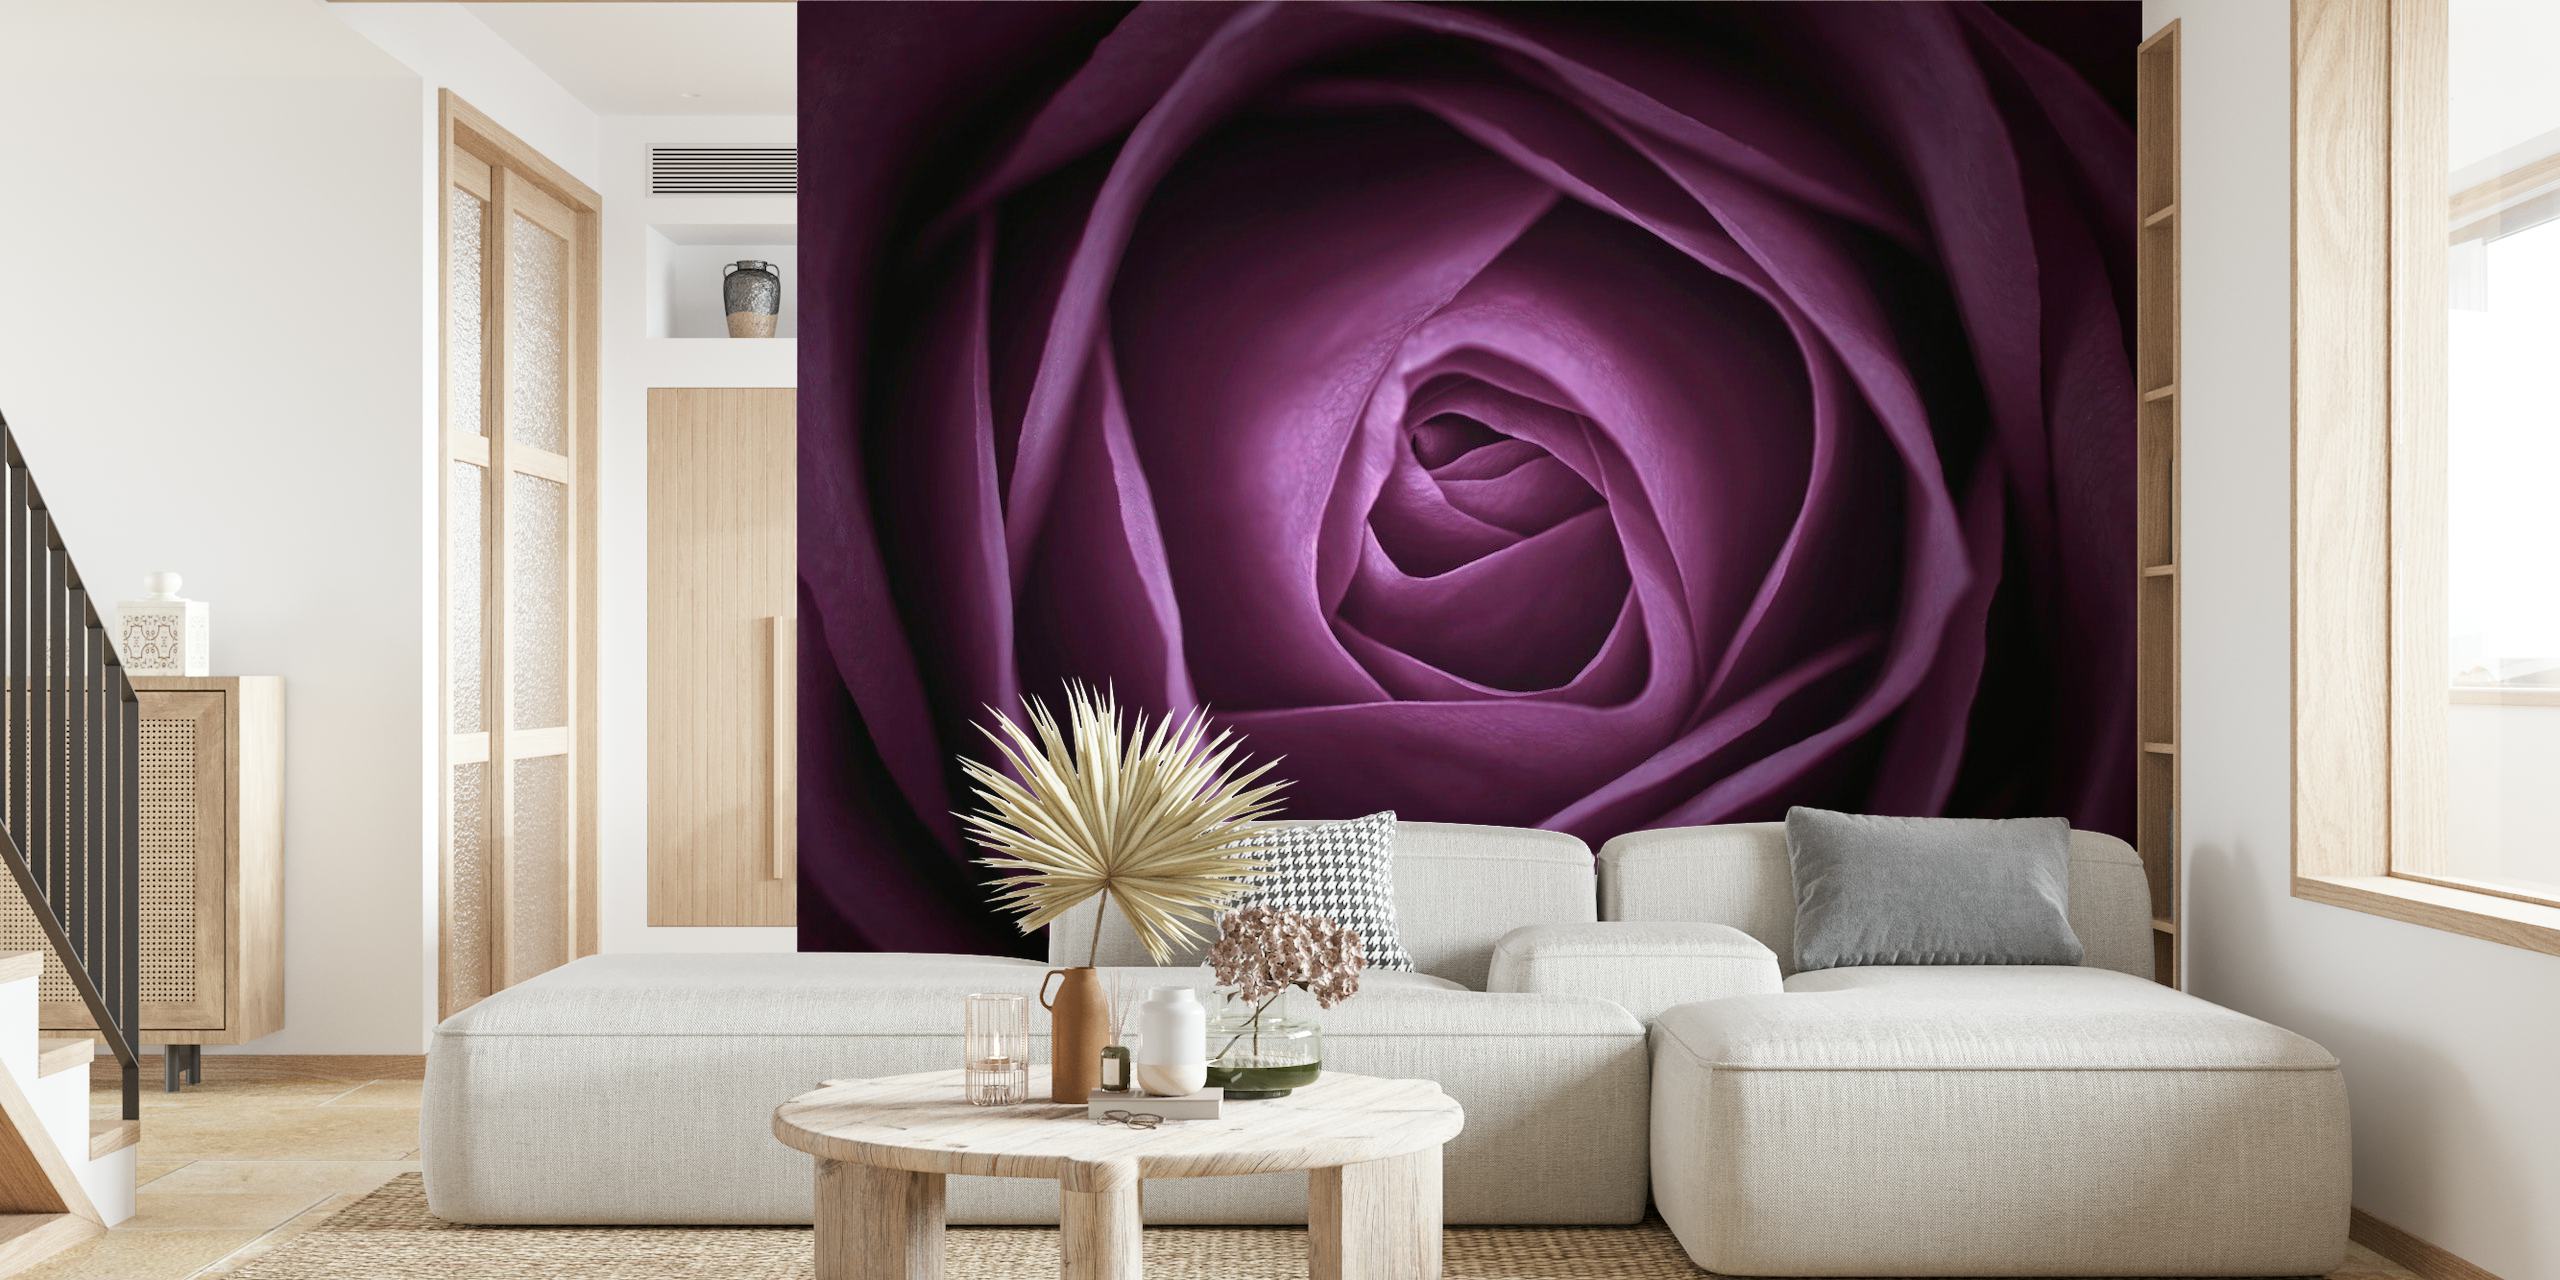 Nærbillede af et lilla rose vægmaleri med lagdelte kronblade